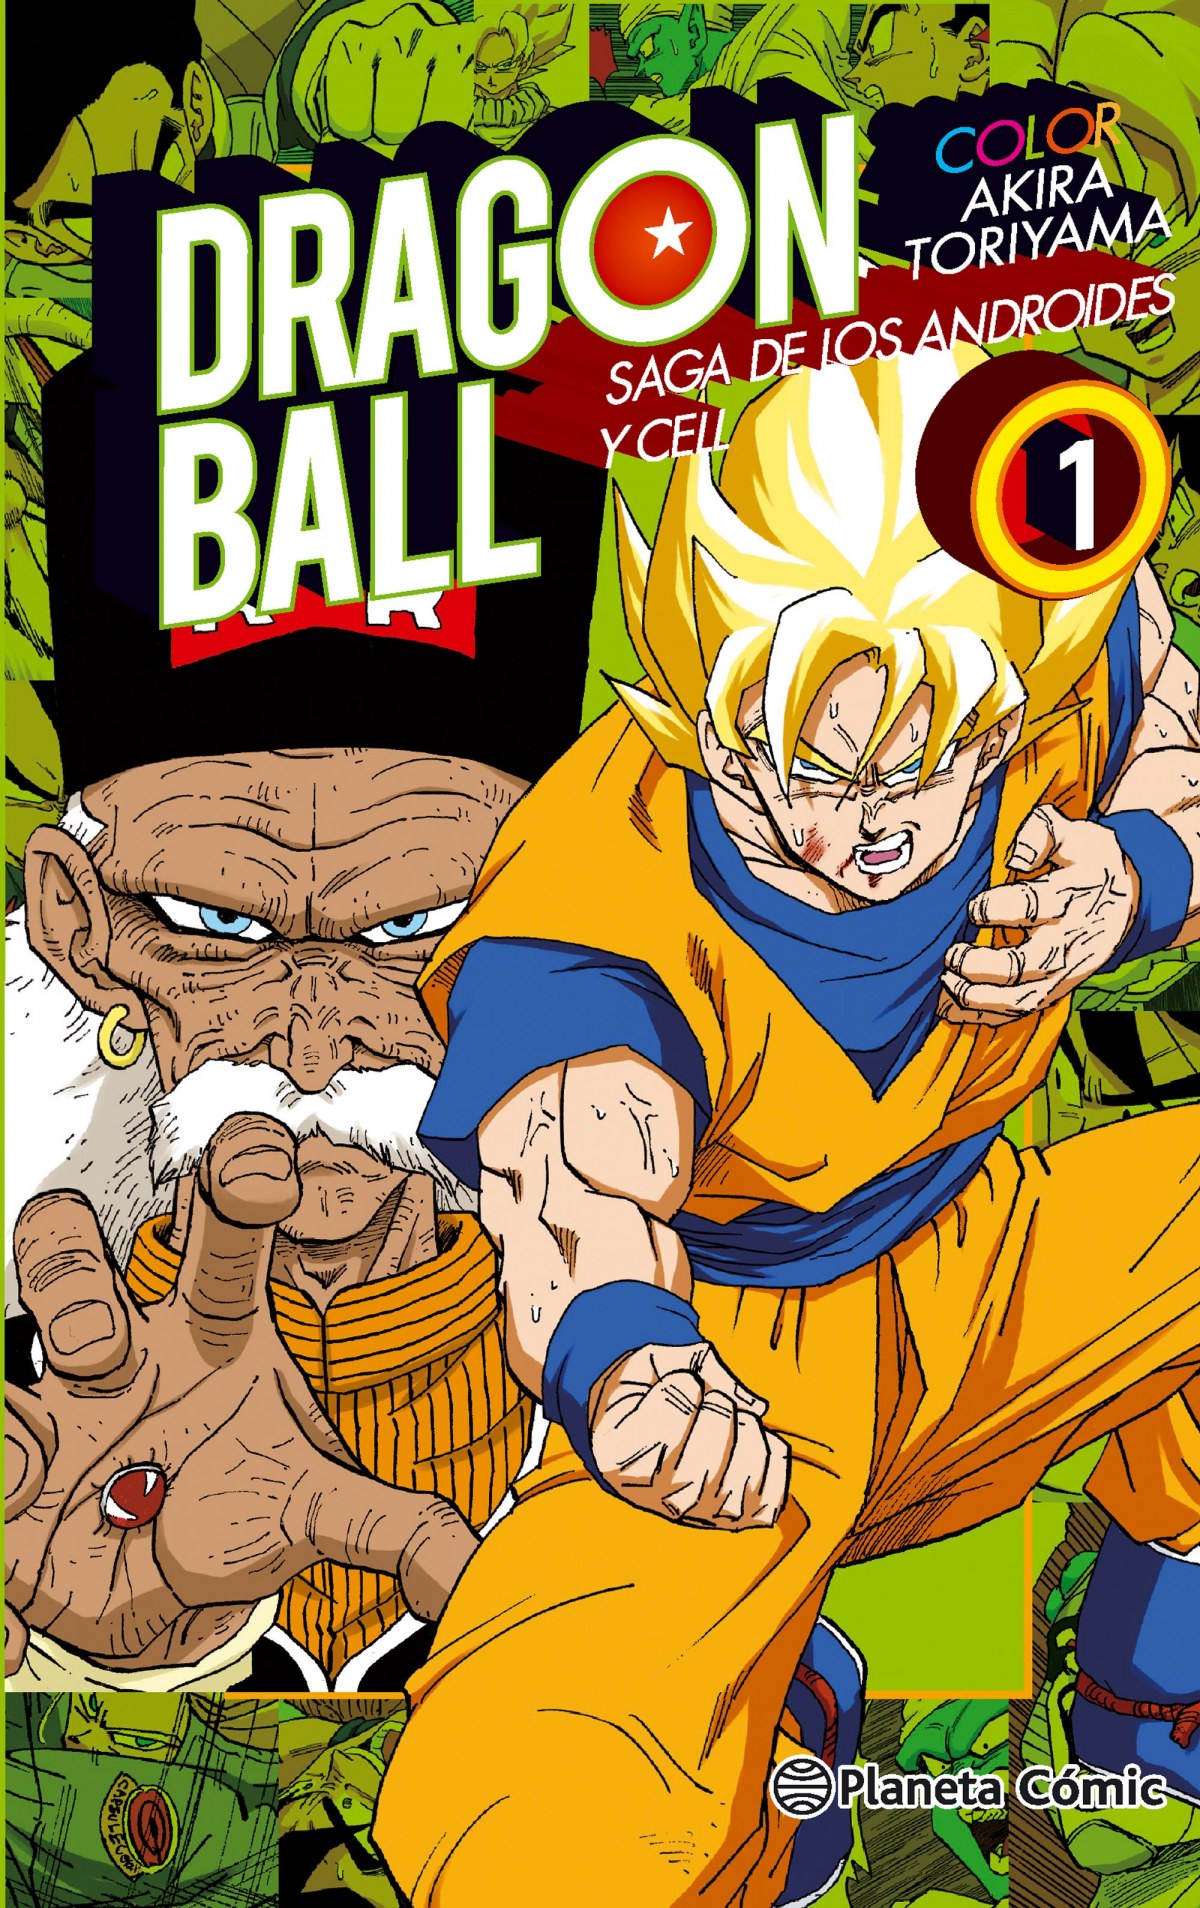 Dragon ball Saga de los Androides y Cell - Toriyama, Akira